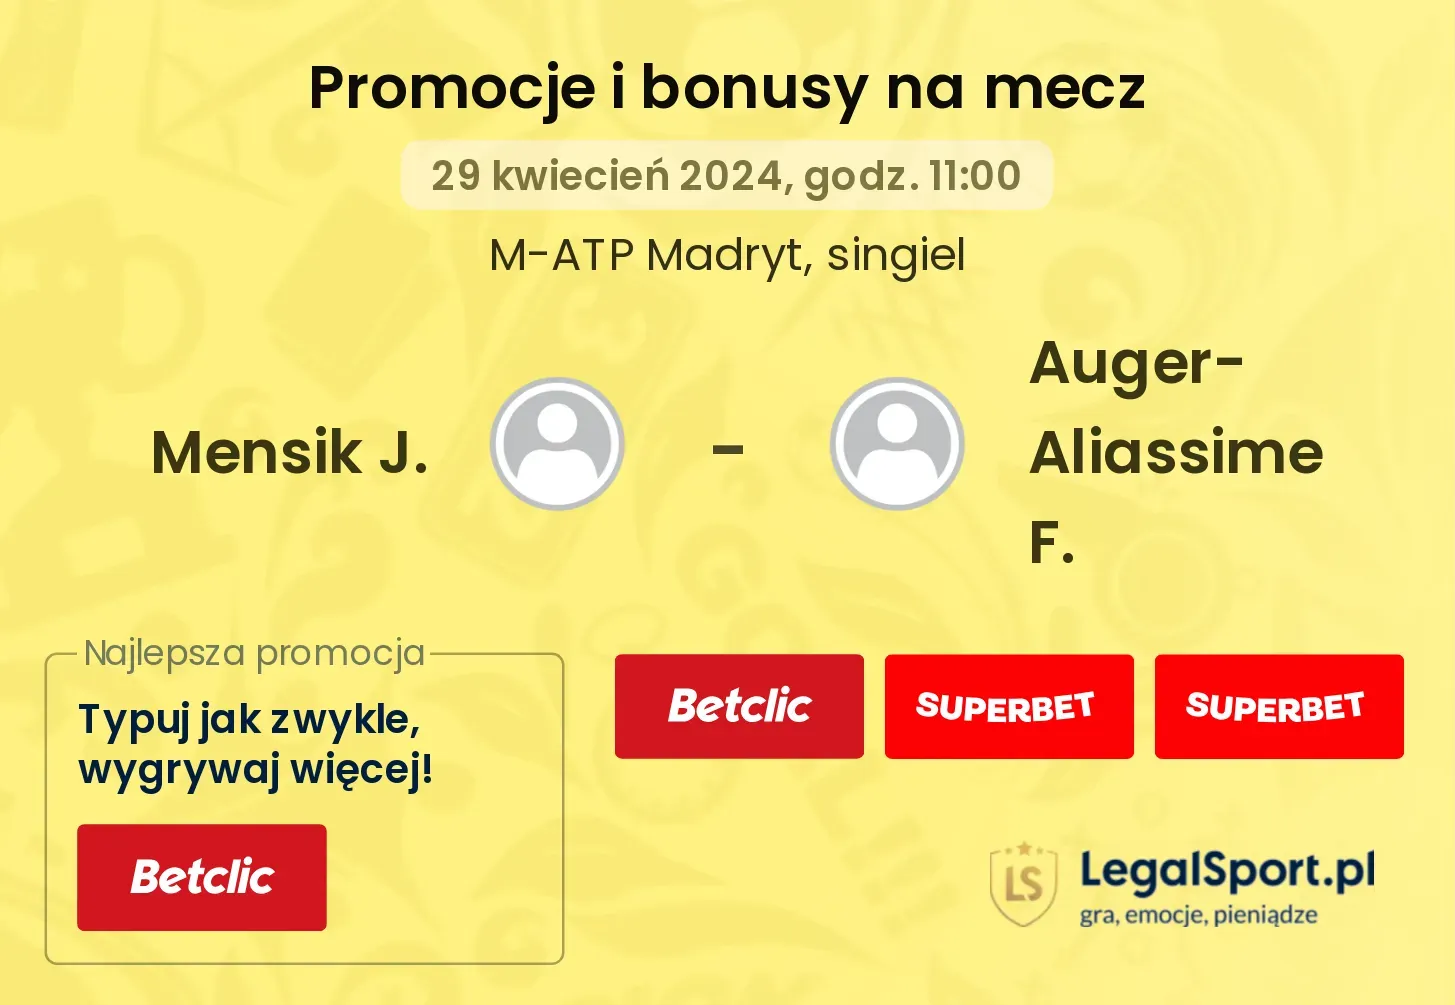 Mensik J. - Auger-Aliassime F. promocje bonusy na mecz